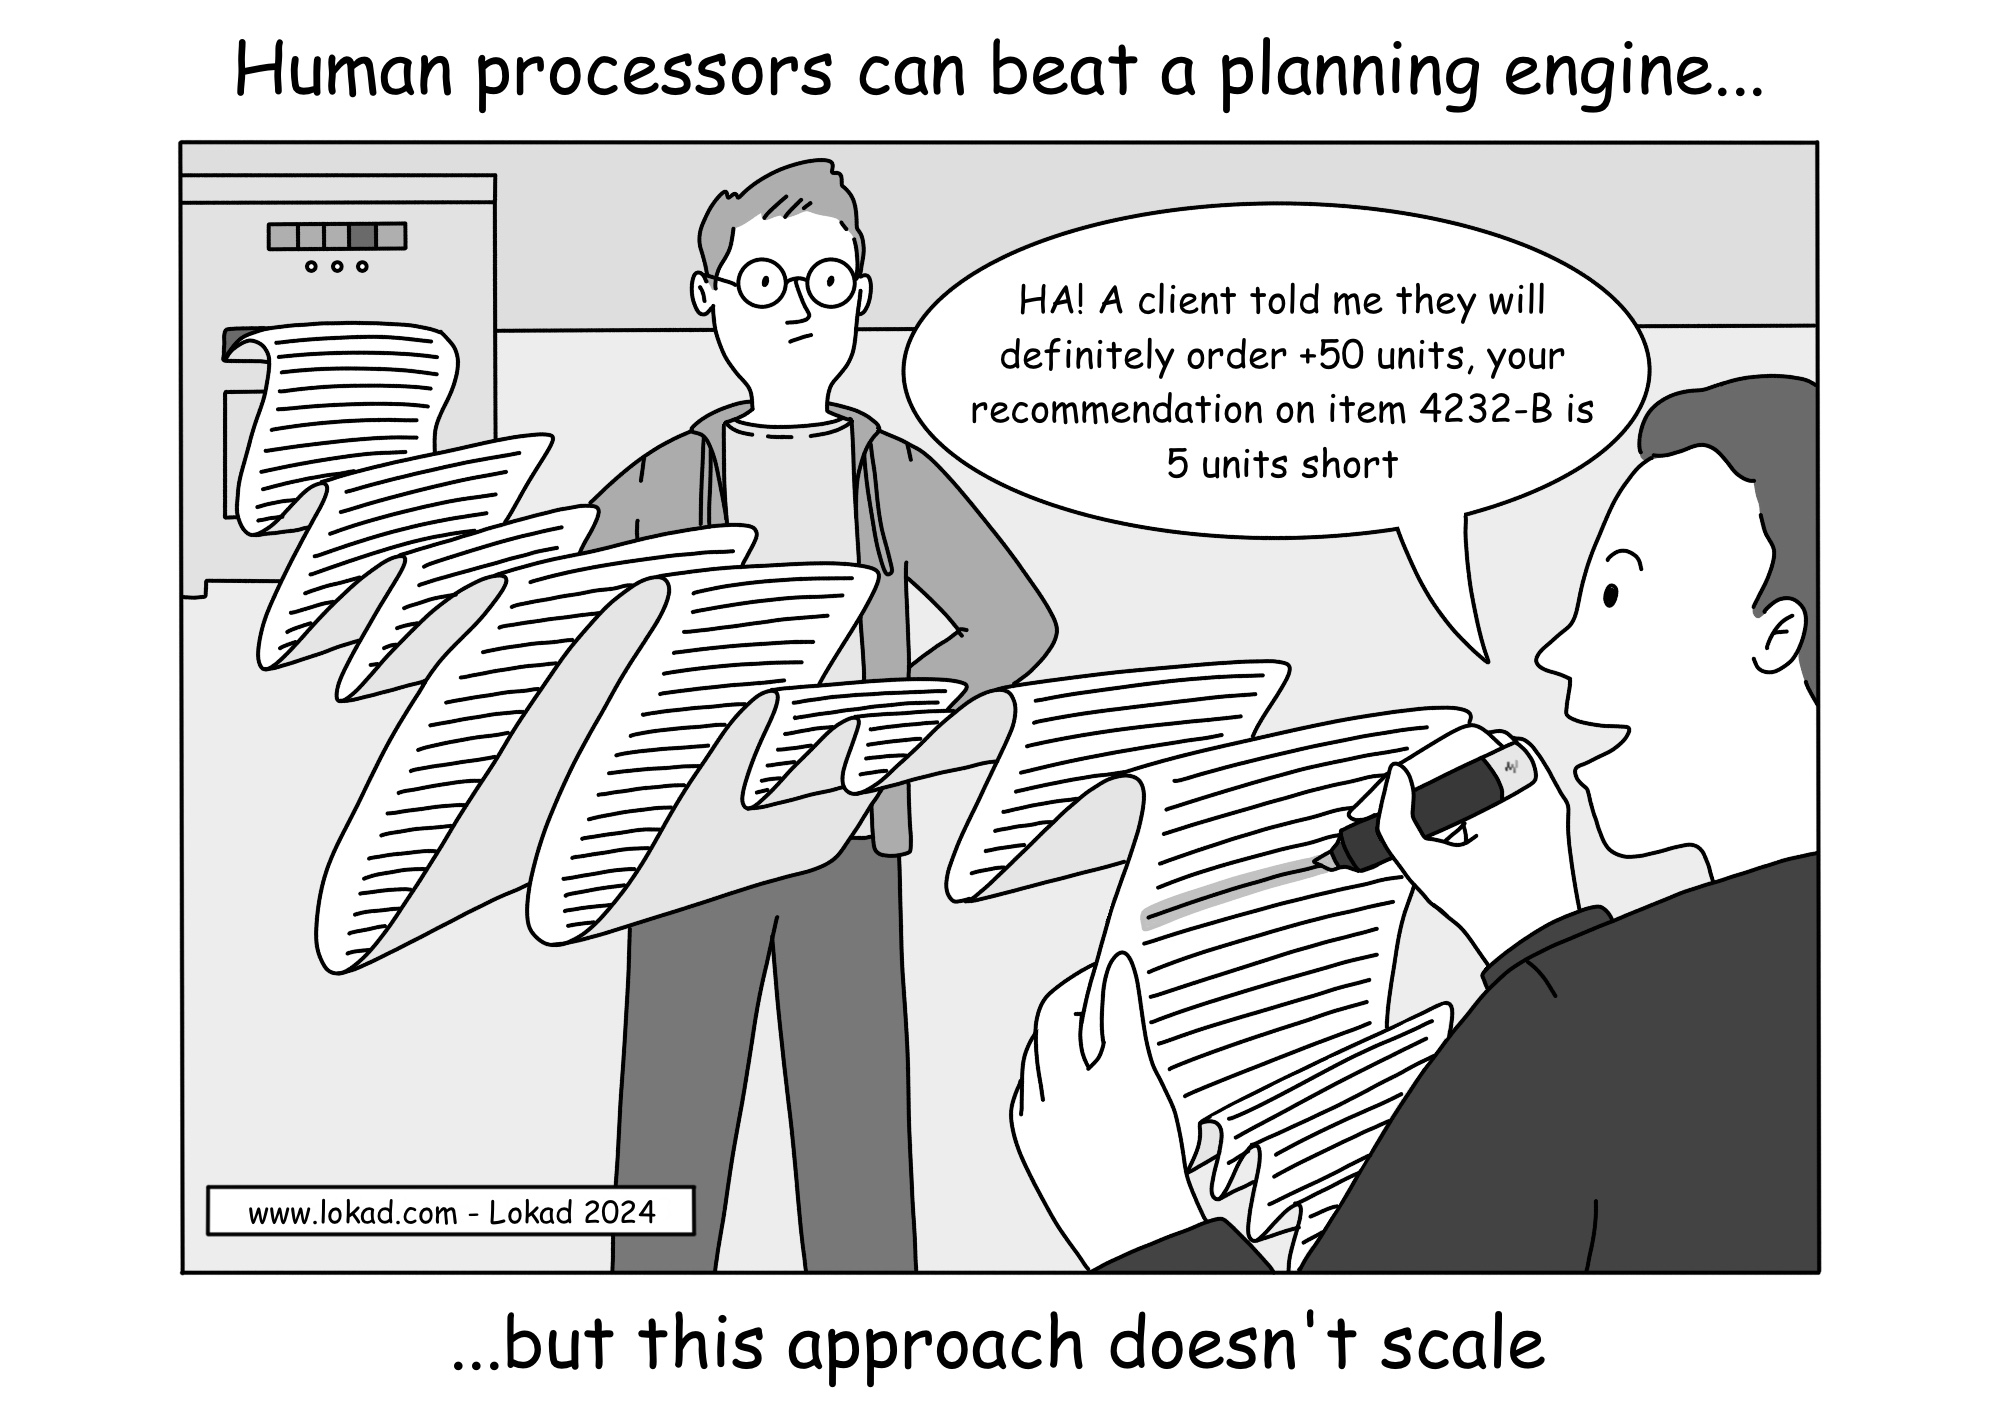 Les processeurs humains peuvent battre un moteur de planification.